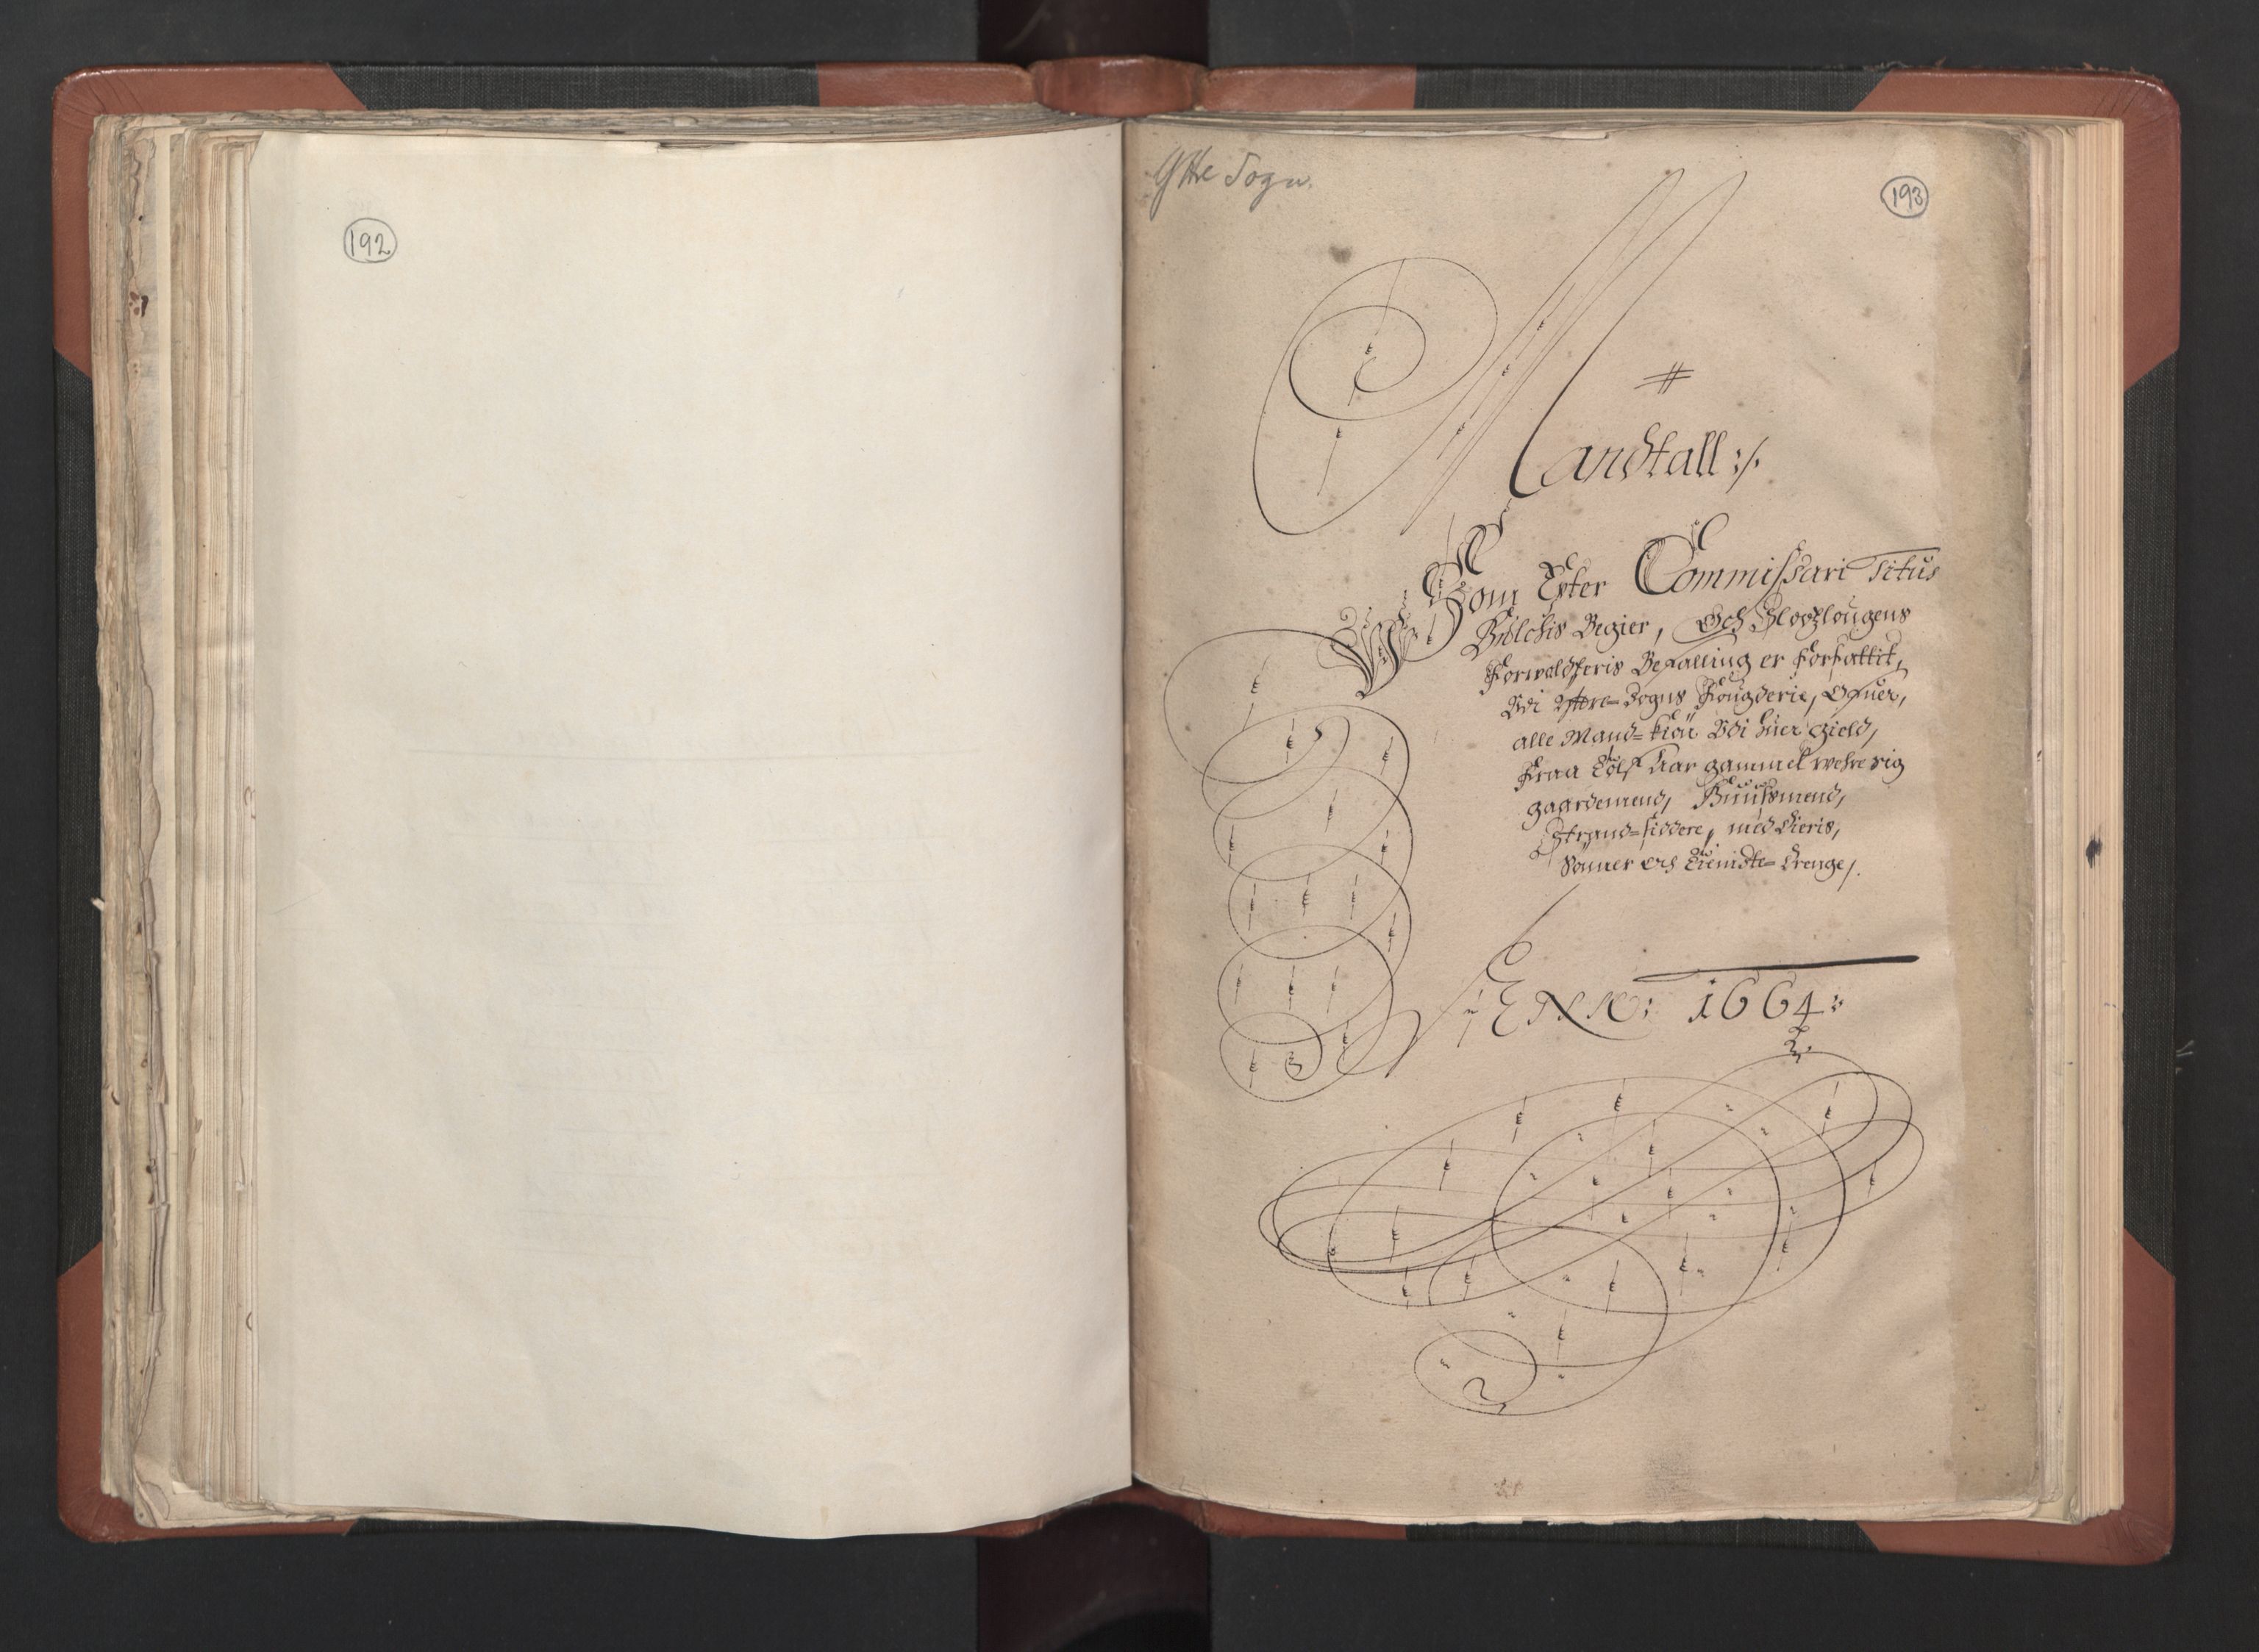 RA, Bailiff's Census 1664-1666, no. 14: Hardanger len, Ytre Sogn fogderi and Indre Sogn fogderi, 1664-1665, p. 192-193